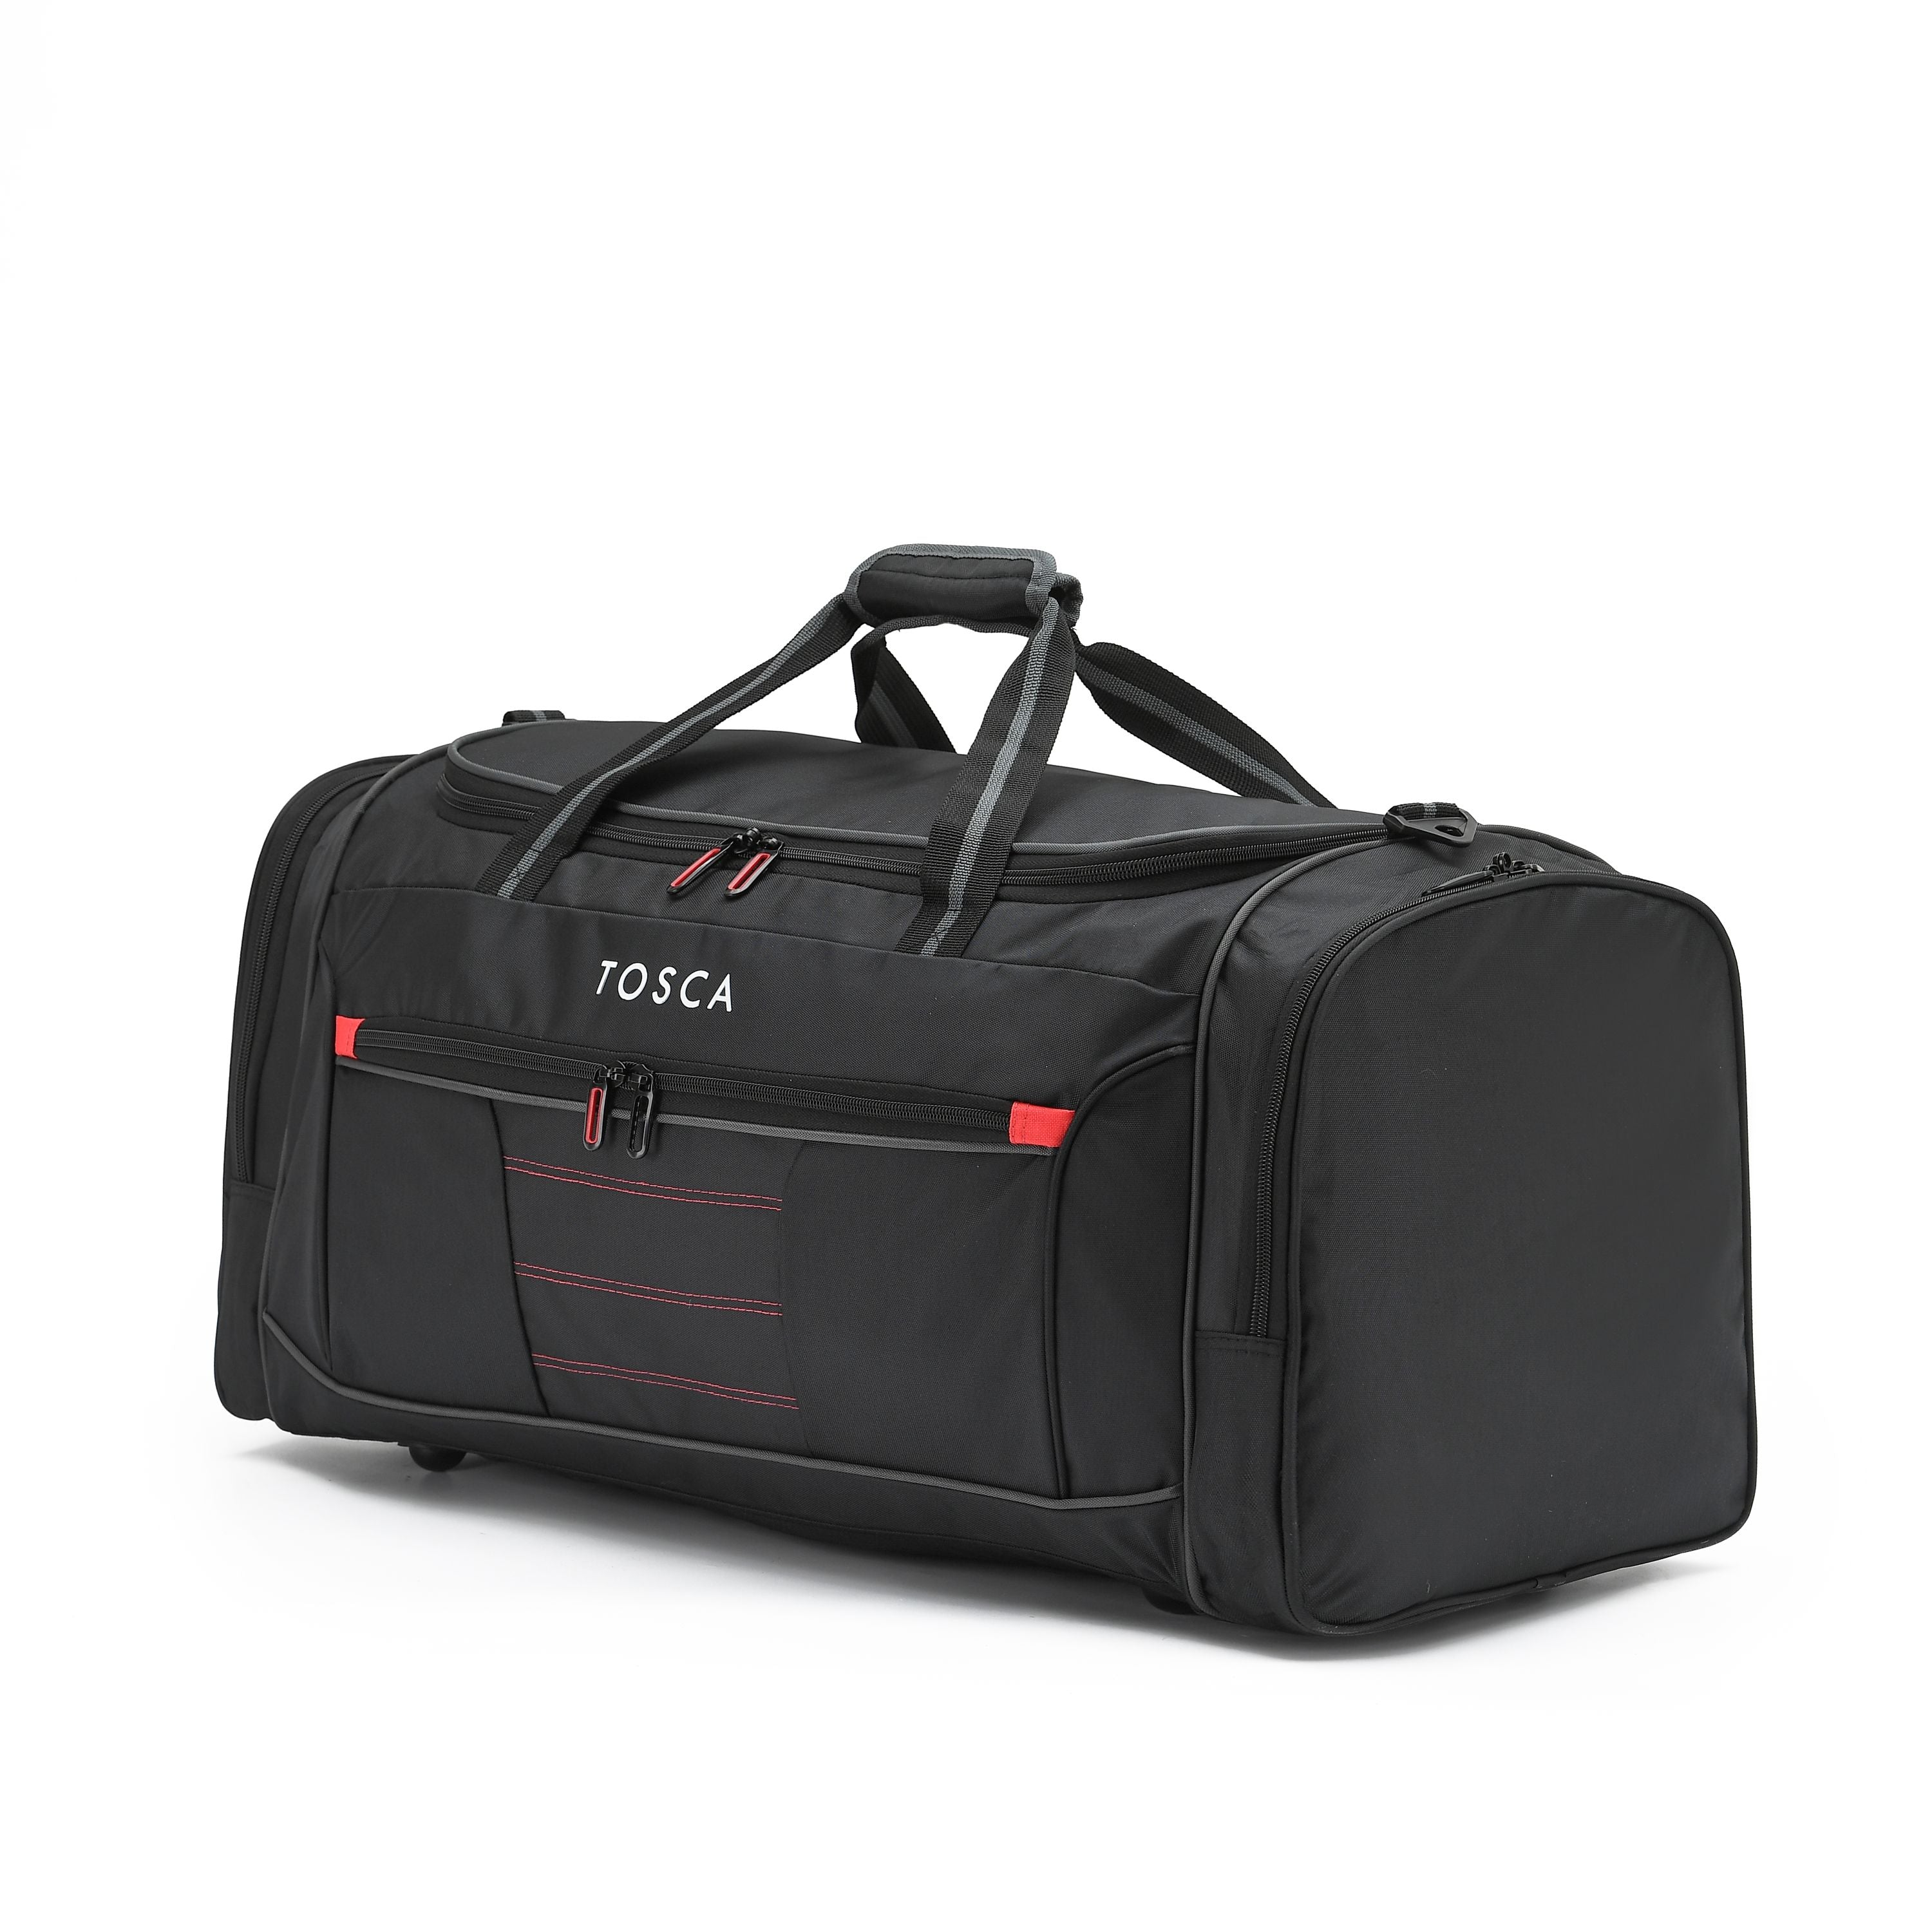 Tosca - TCA794M 70cm Medium Duffle Bag - Black/Red-2